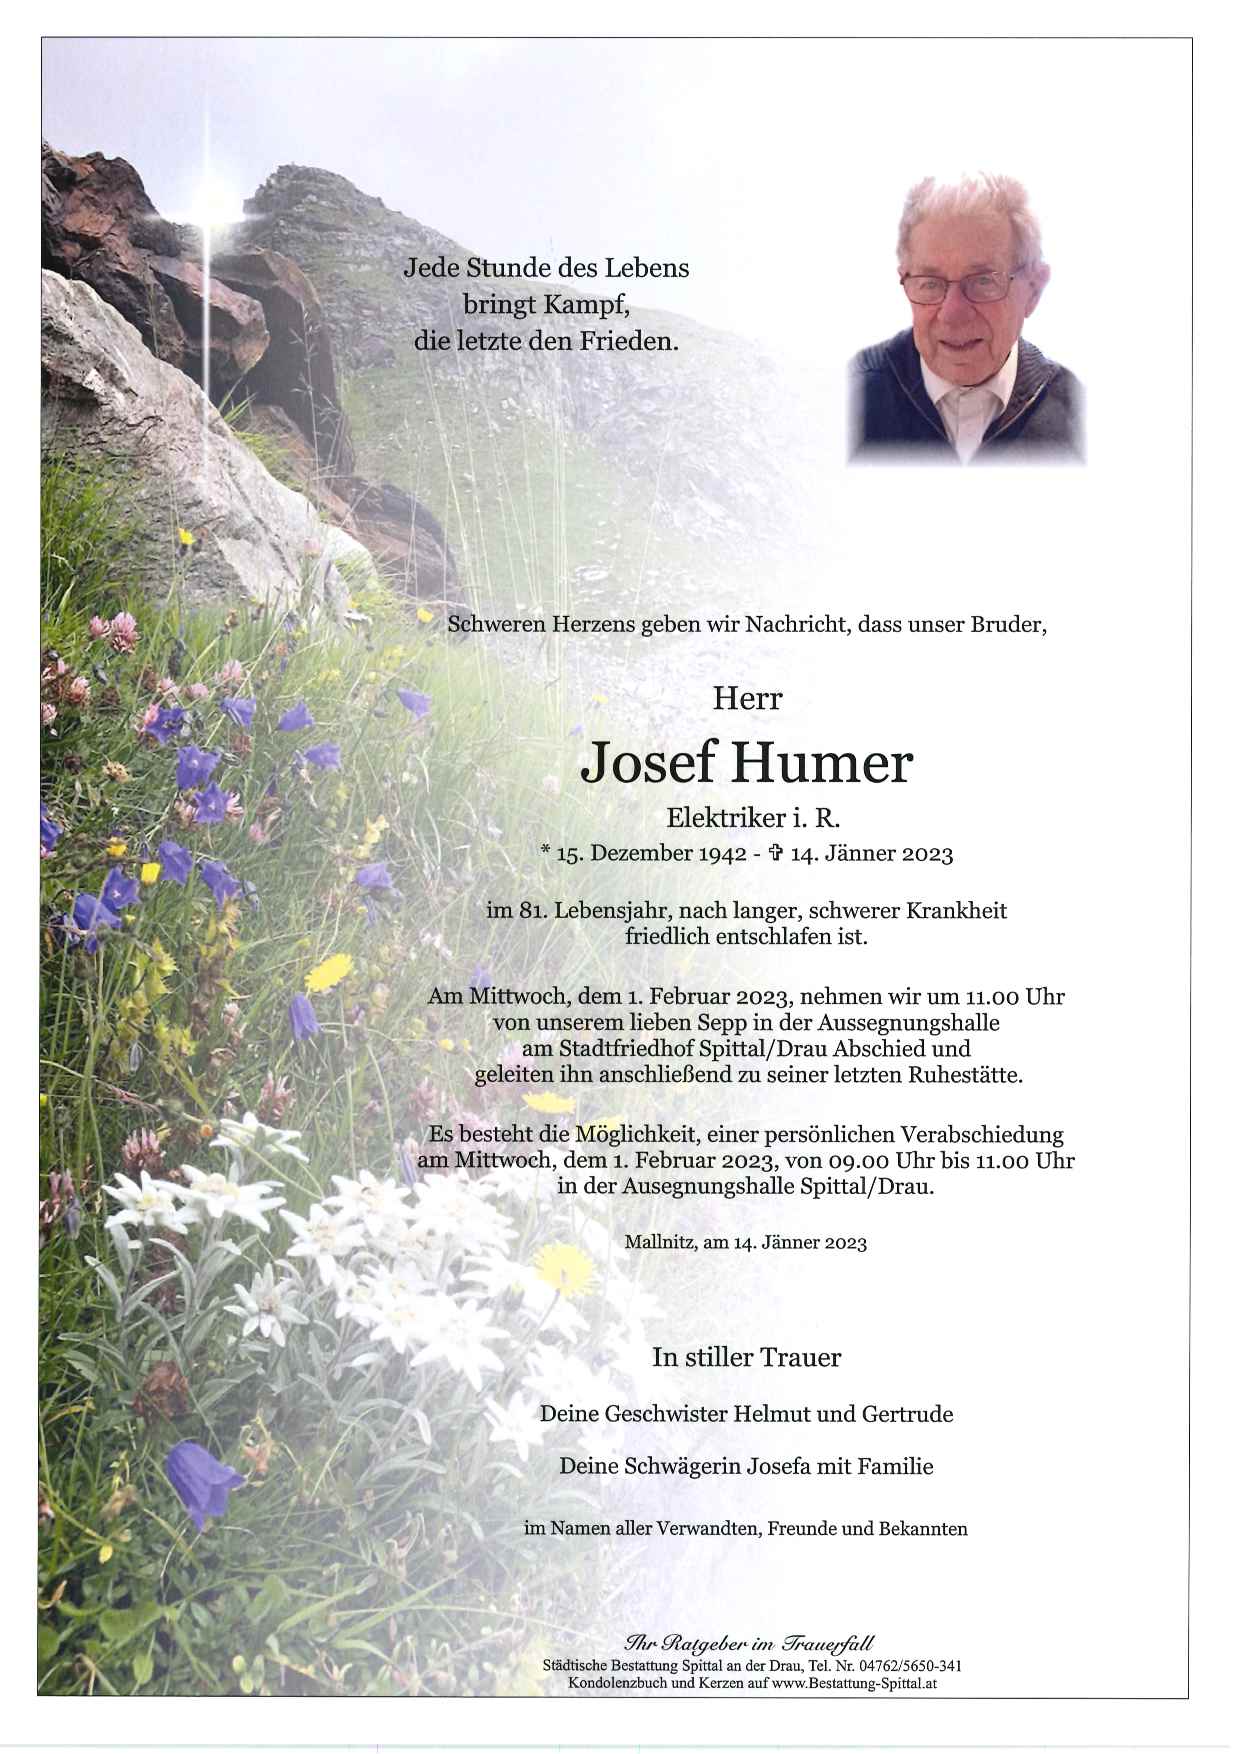 Josef Humer